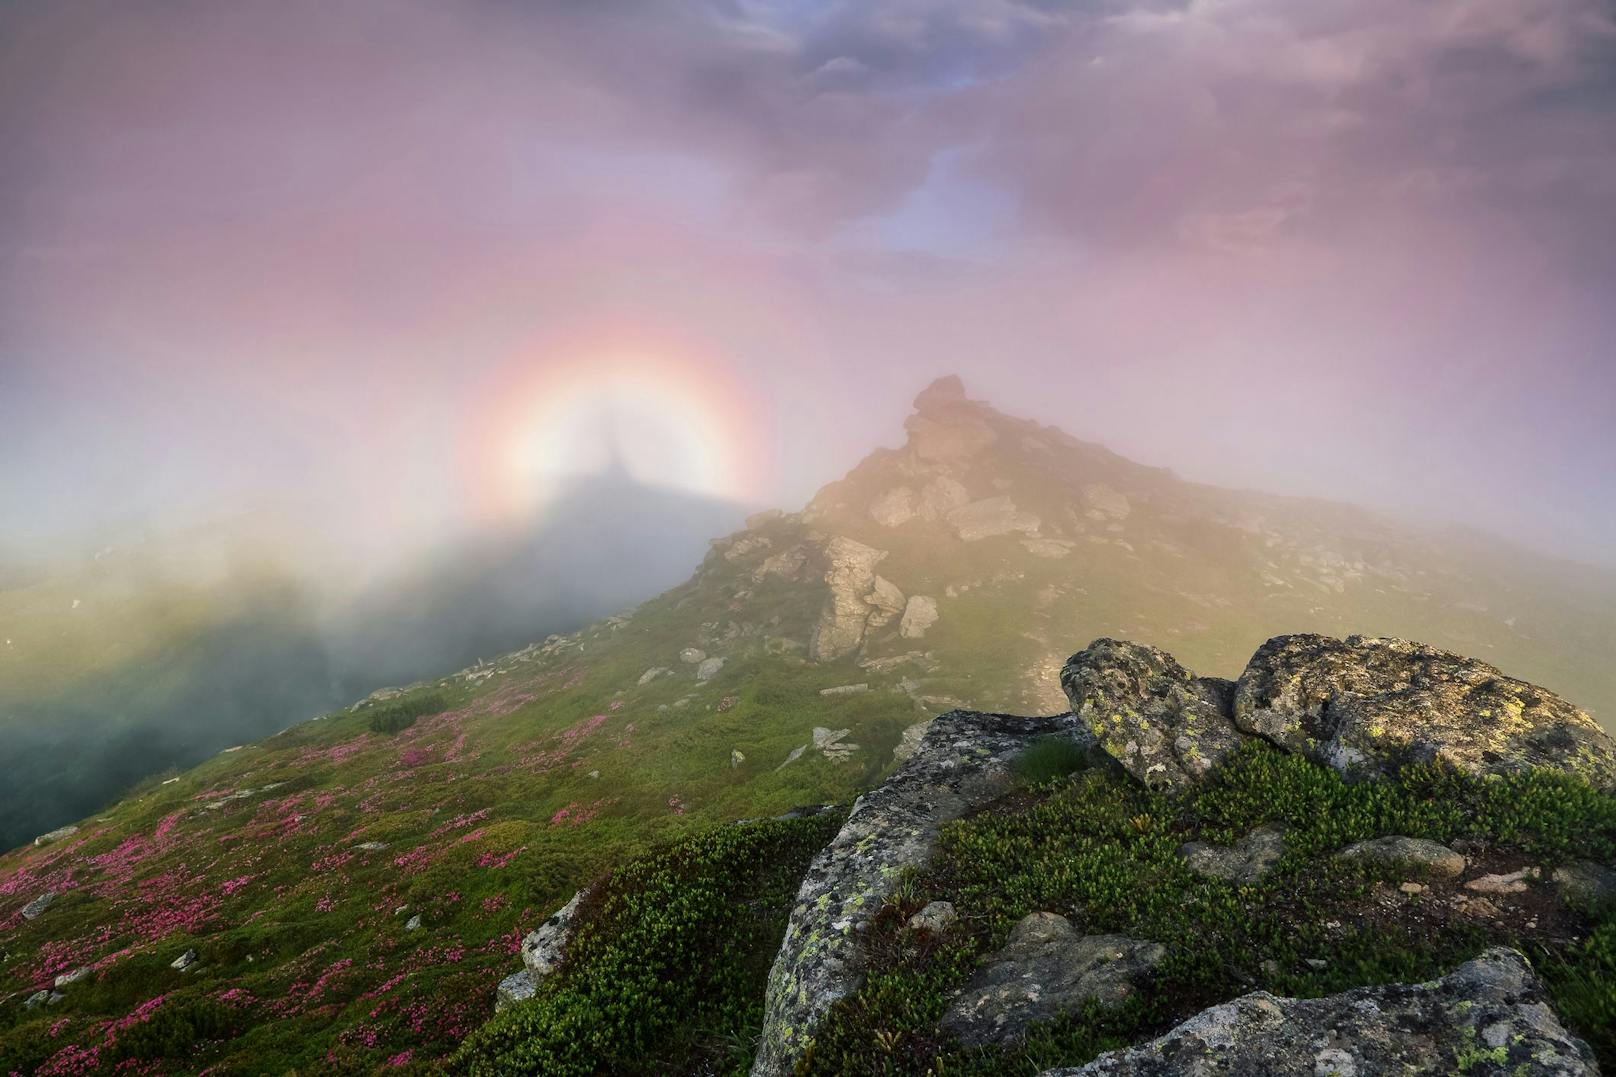 Wer auf einem Grat oder Gipfel mit dem Rücken zur Sonne steht, kann manchmal in der Ferne eine unheimliche Gestalt beobachten, die von einem leuchtenden Regenbogen-Ring umhüllt ist.